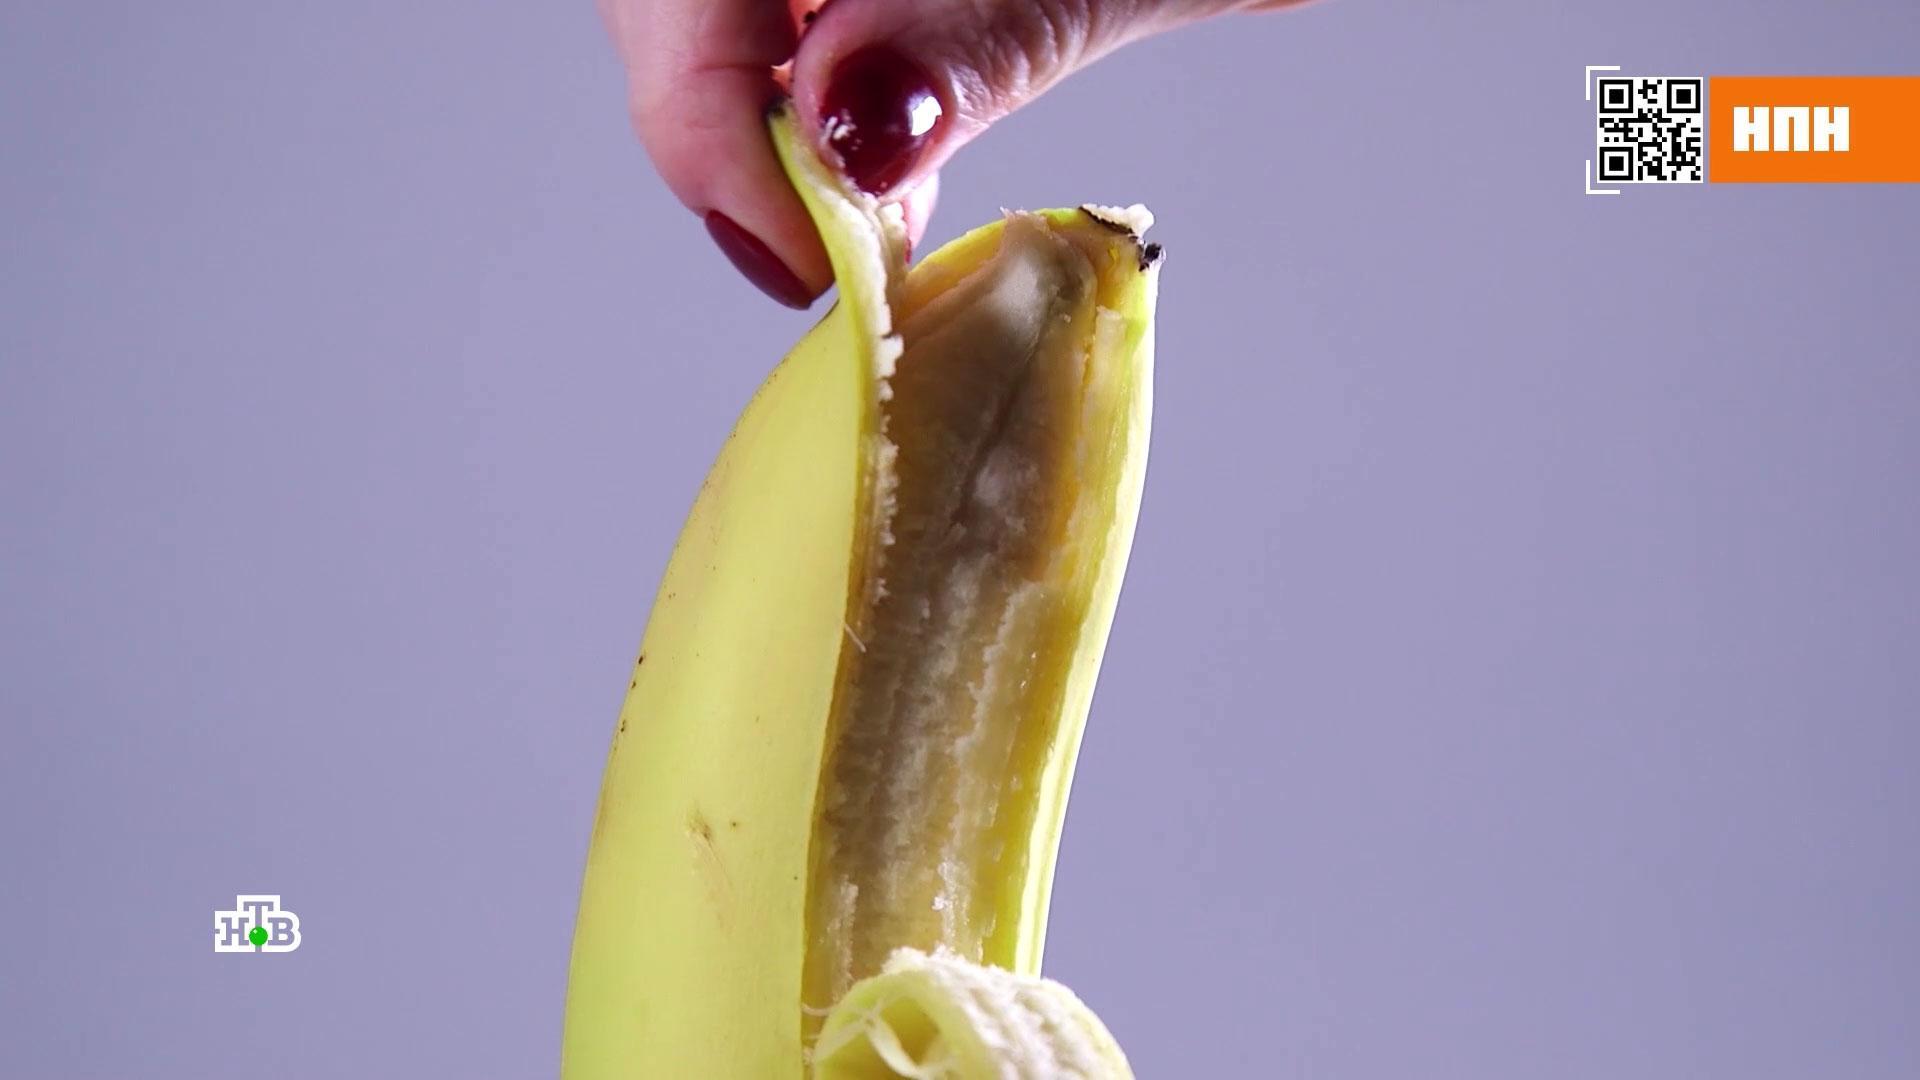 Бананы: в чем их опасность и польза // НТВ.Ru